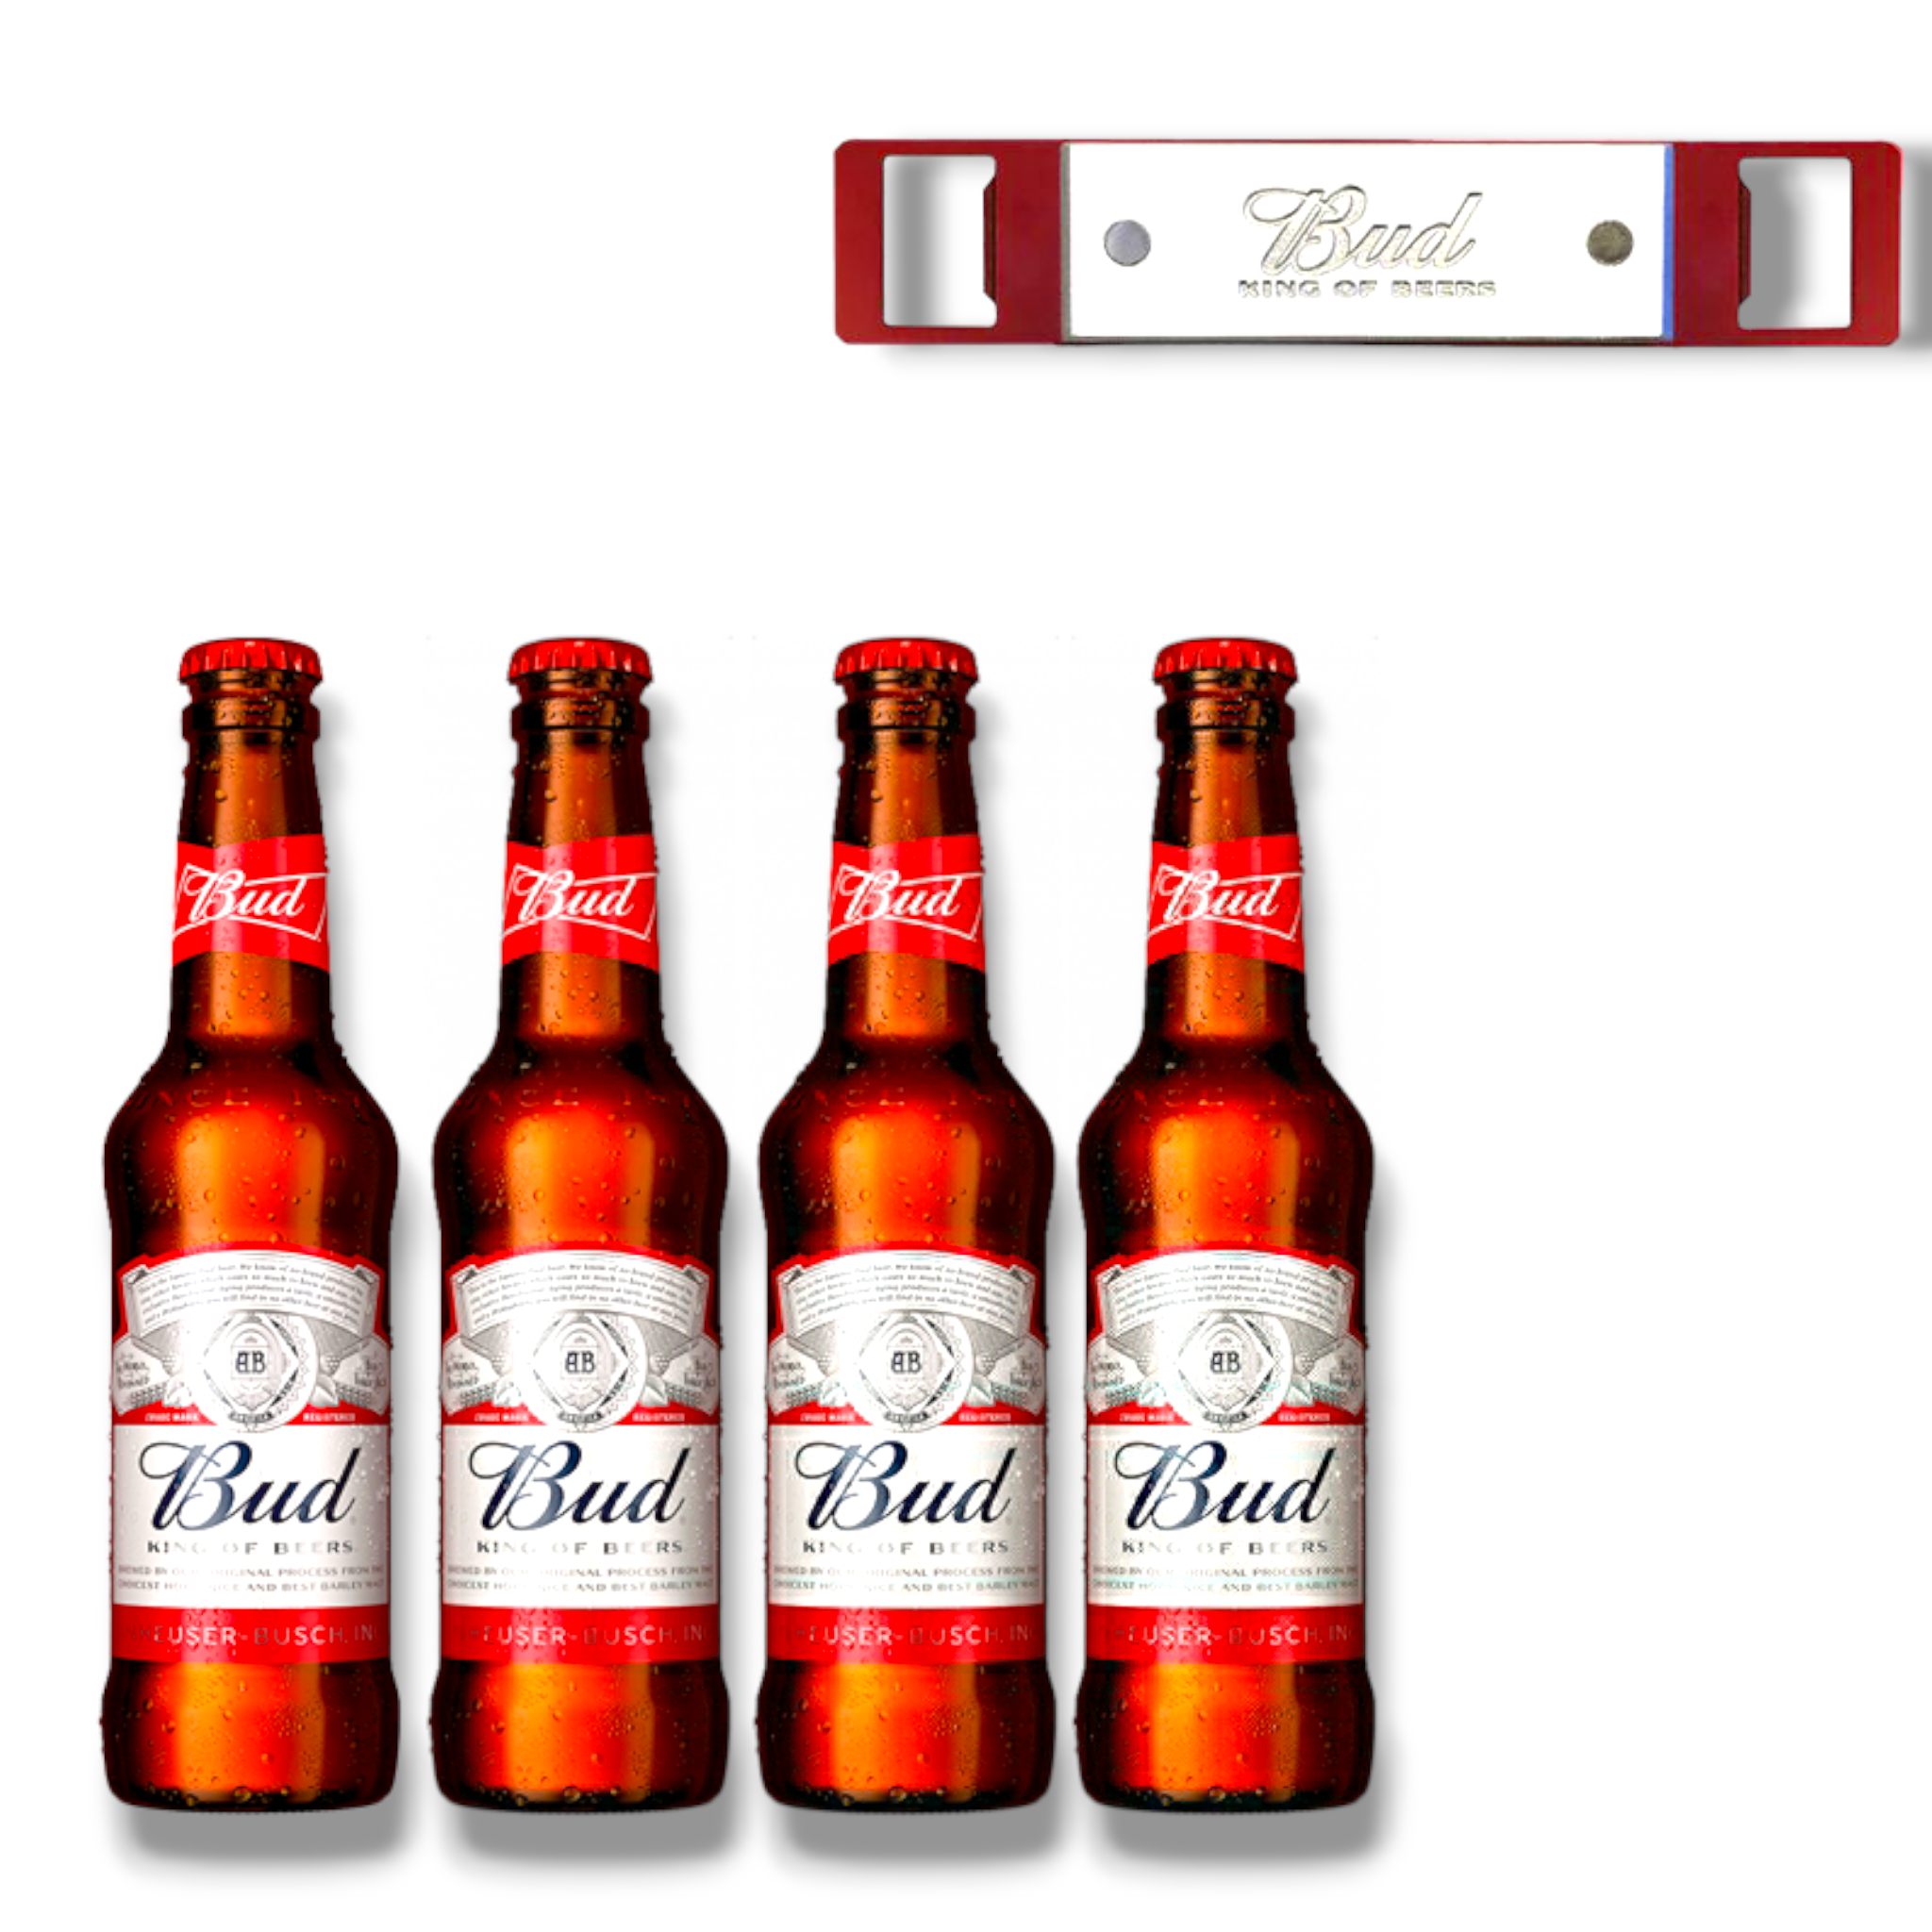 4 x Bud Bier + Original Bud King of Beer Barblade Flaschenöffner